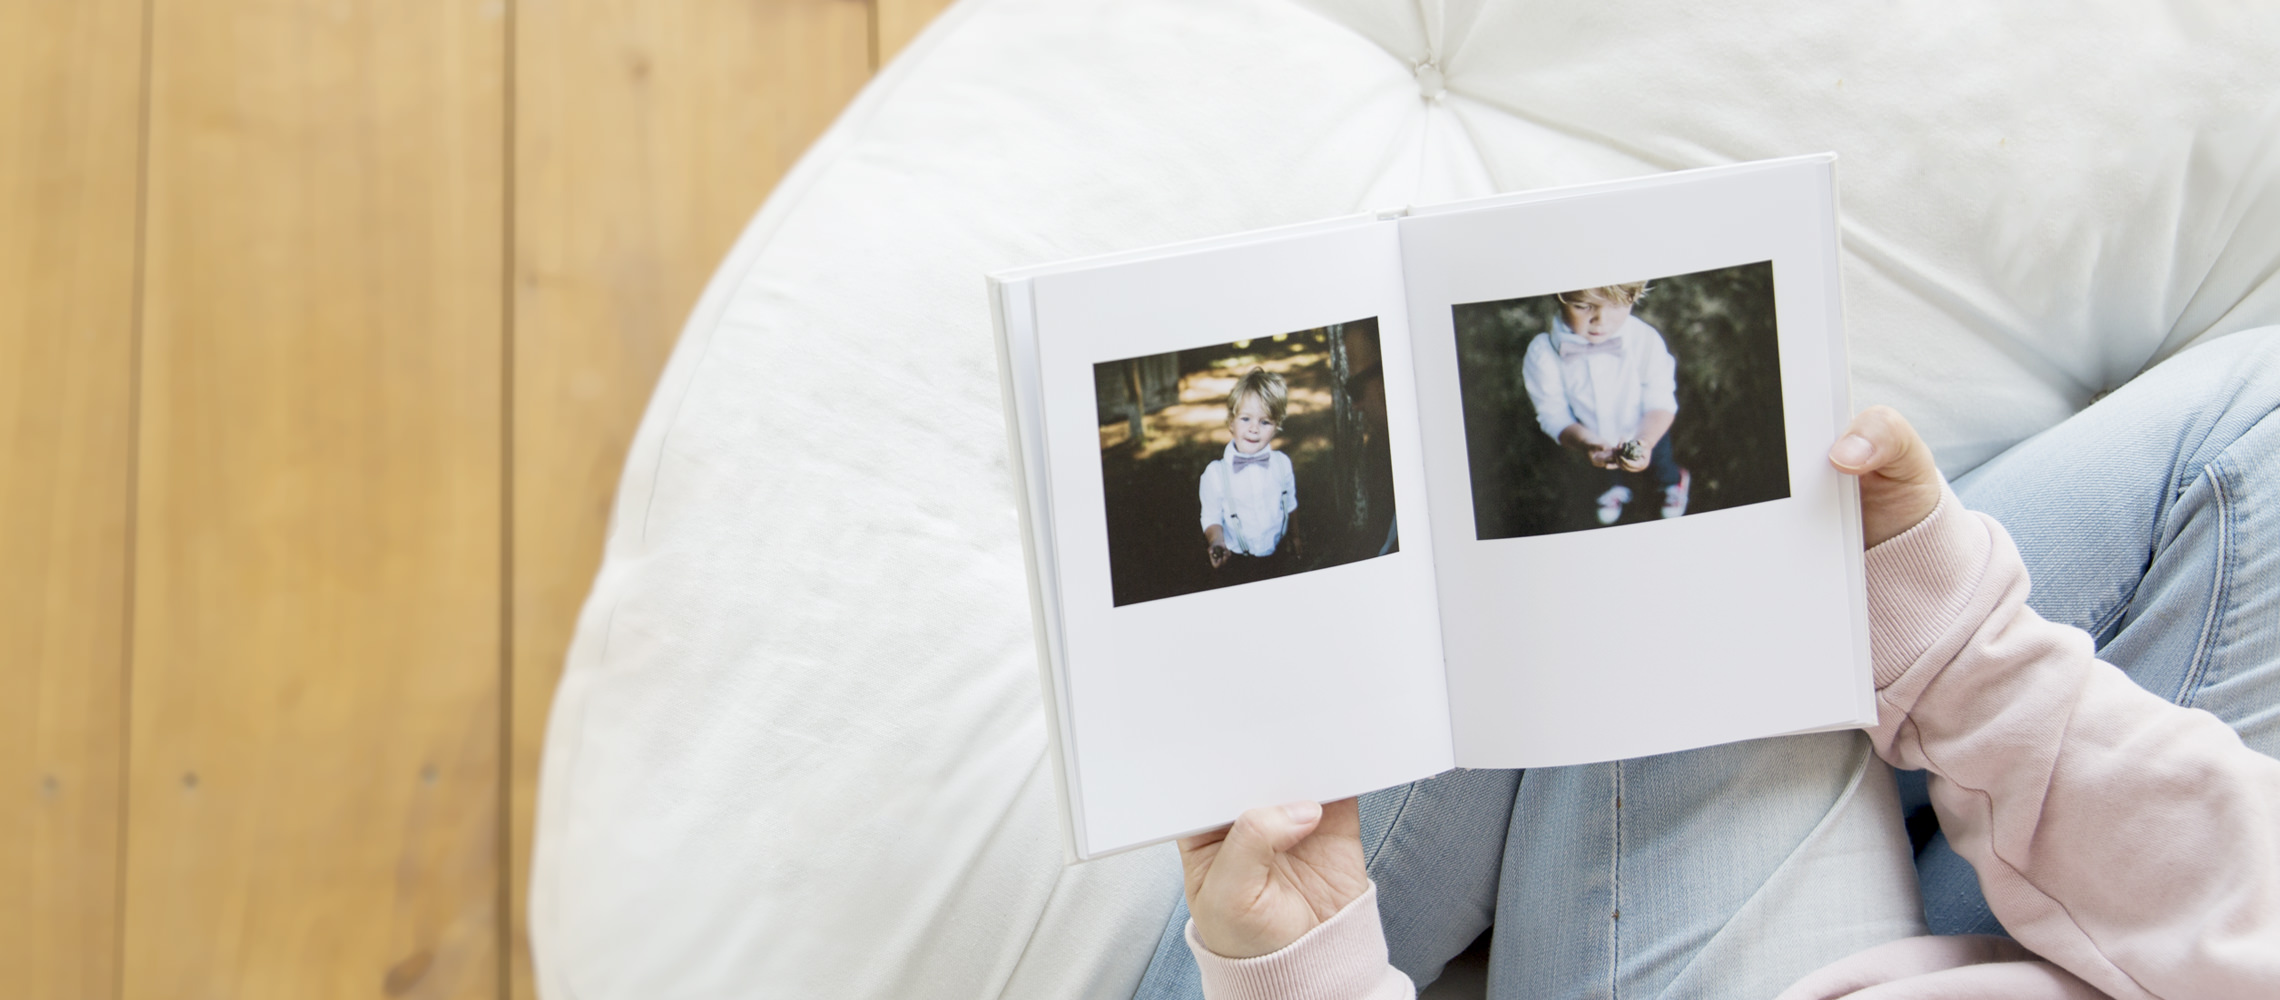 Frau betrachtet Porträtfotobuch mit Bildern eines kleinen Jungen.